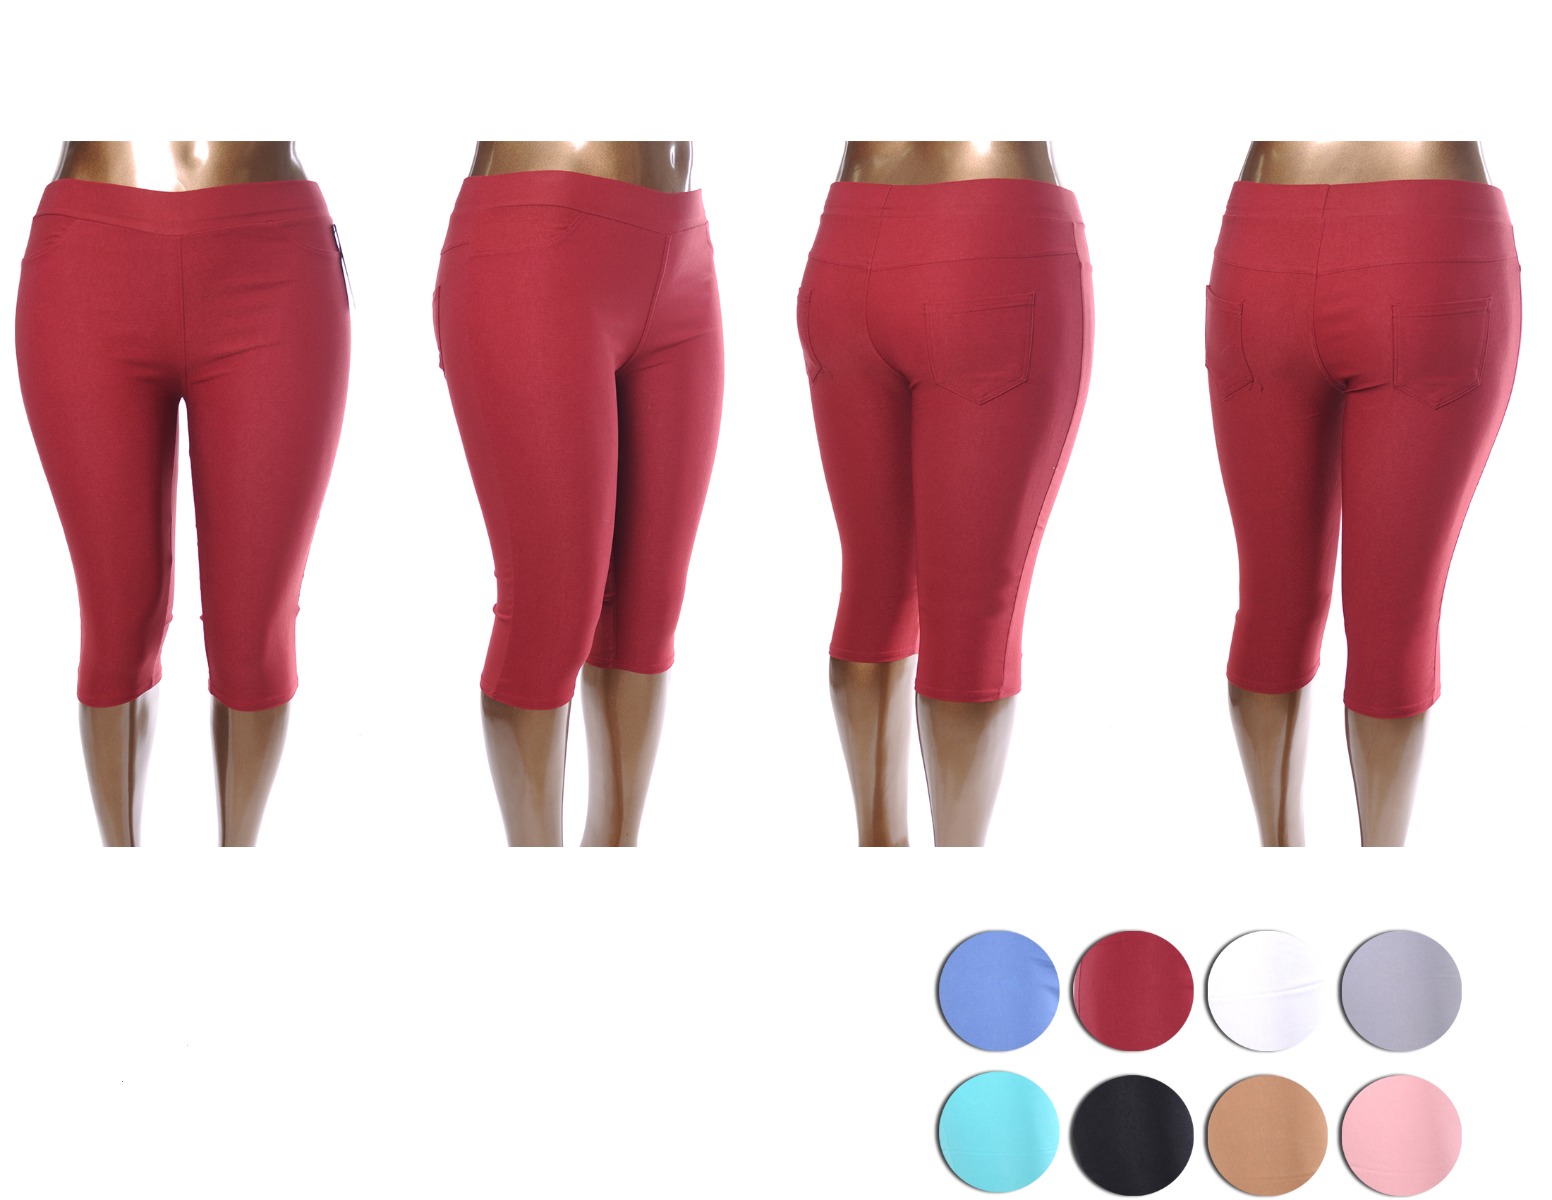 Women's Plus Size Millennium Capri PANTS - Assorted Colors